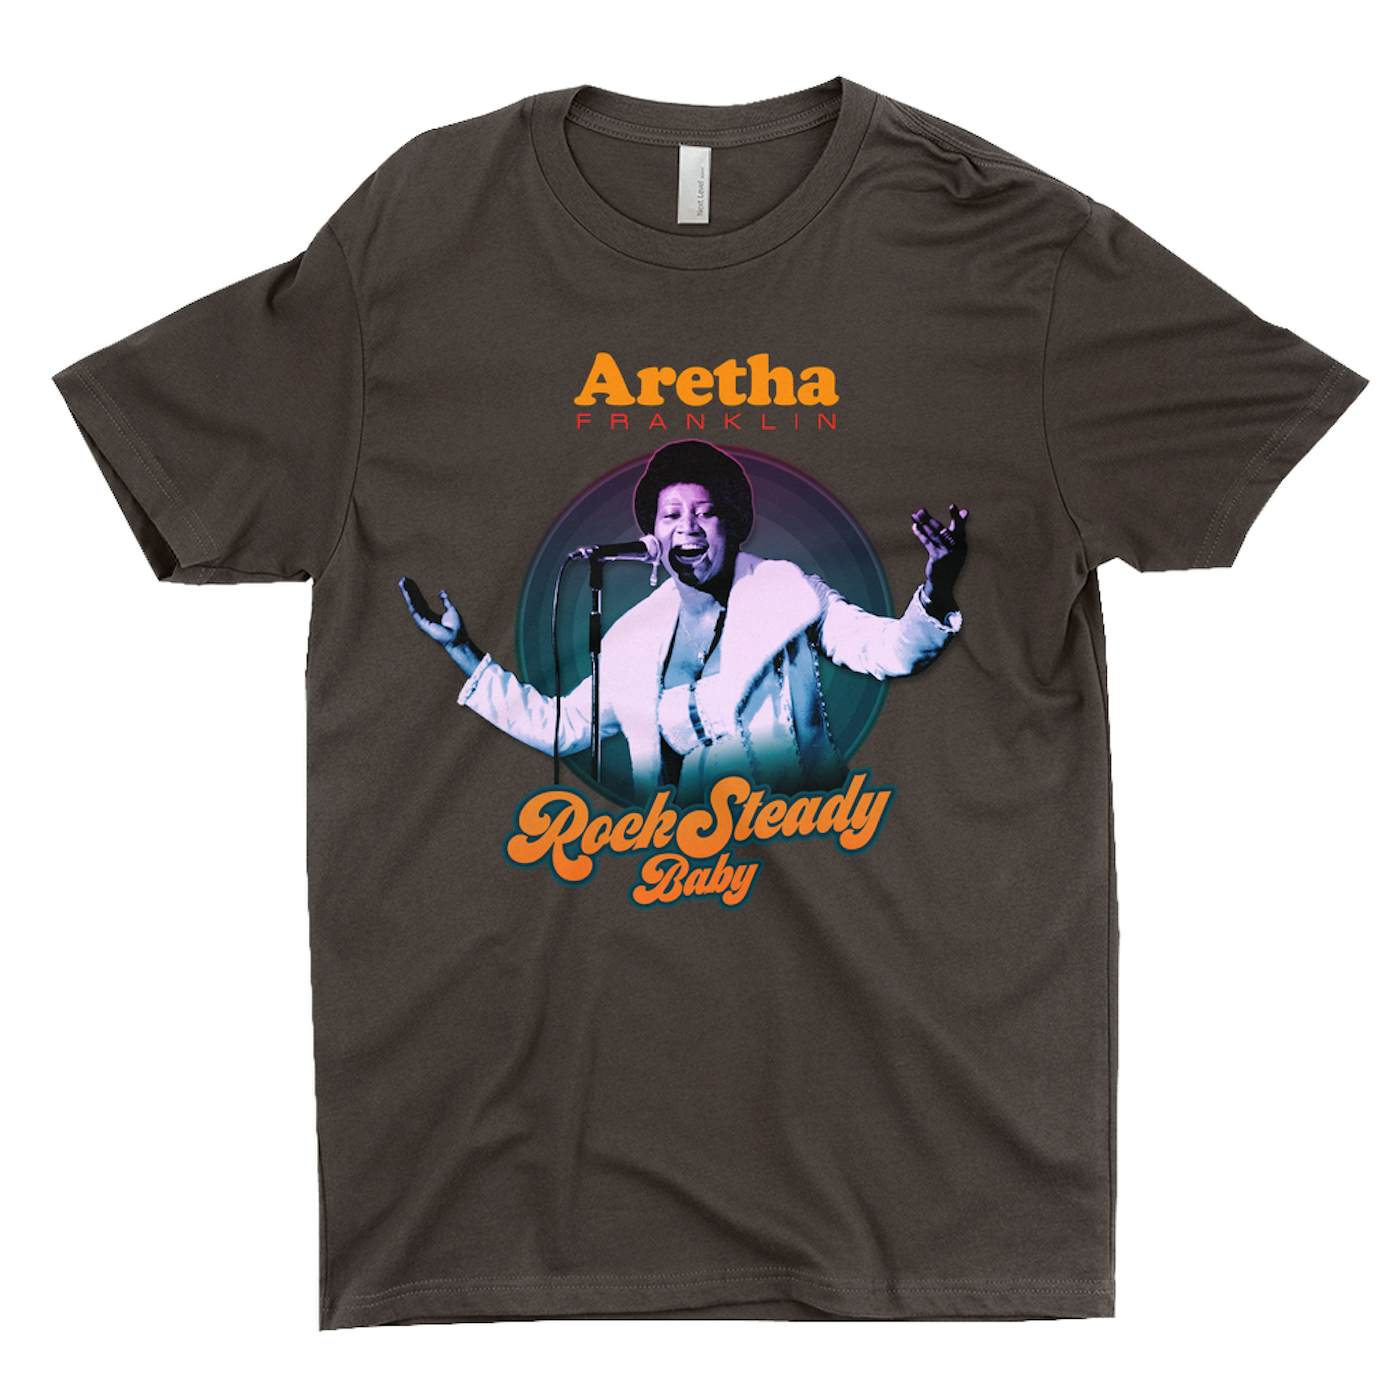 Aretha Franklin T-Shirt | Rock Steady Baby Retro Aretha Franklin Shirt